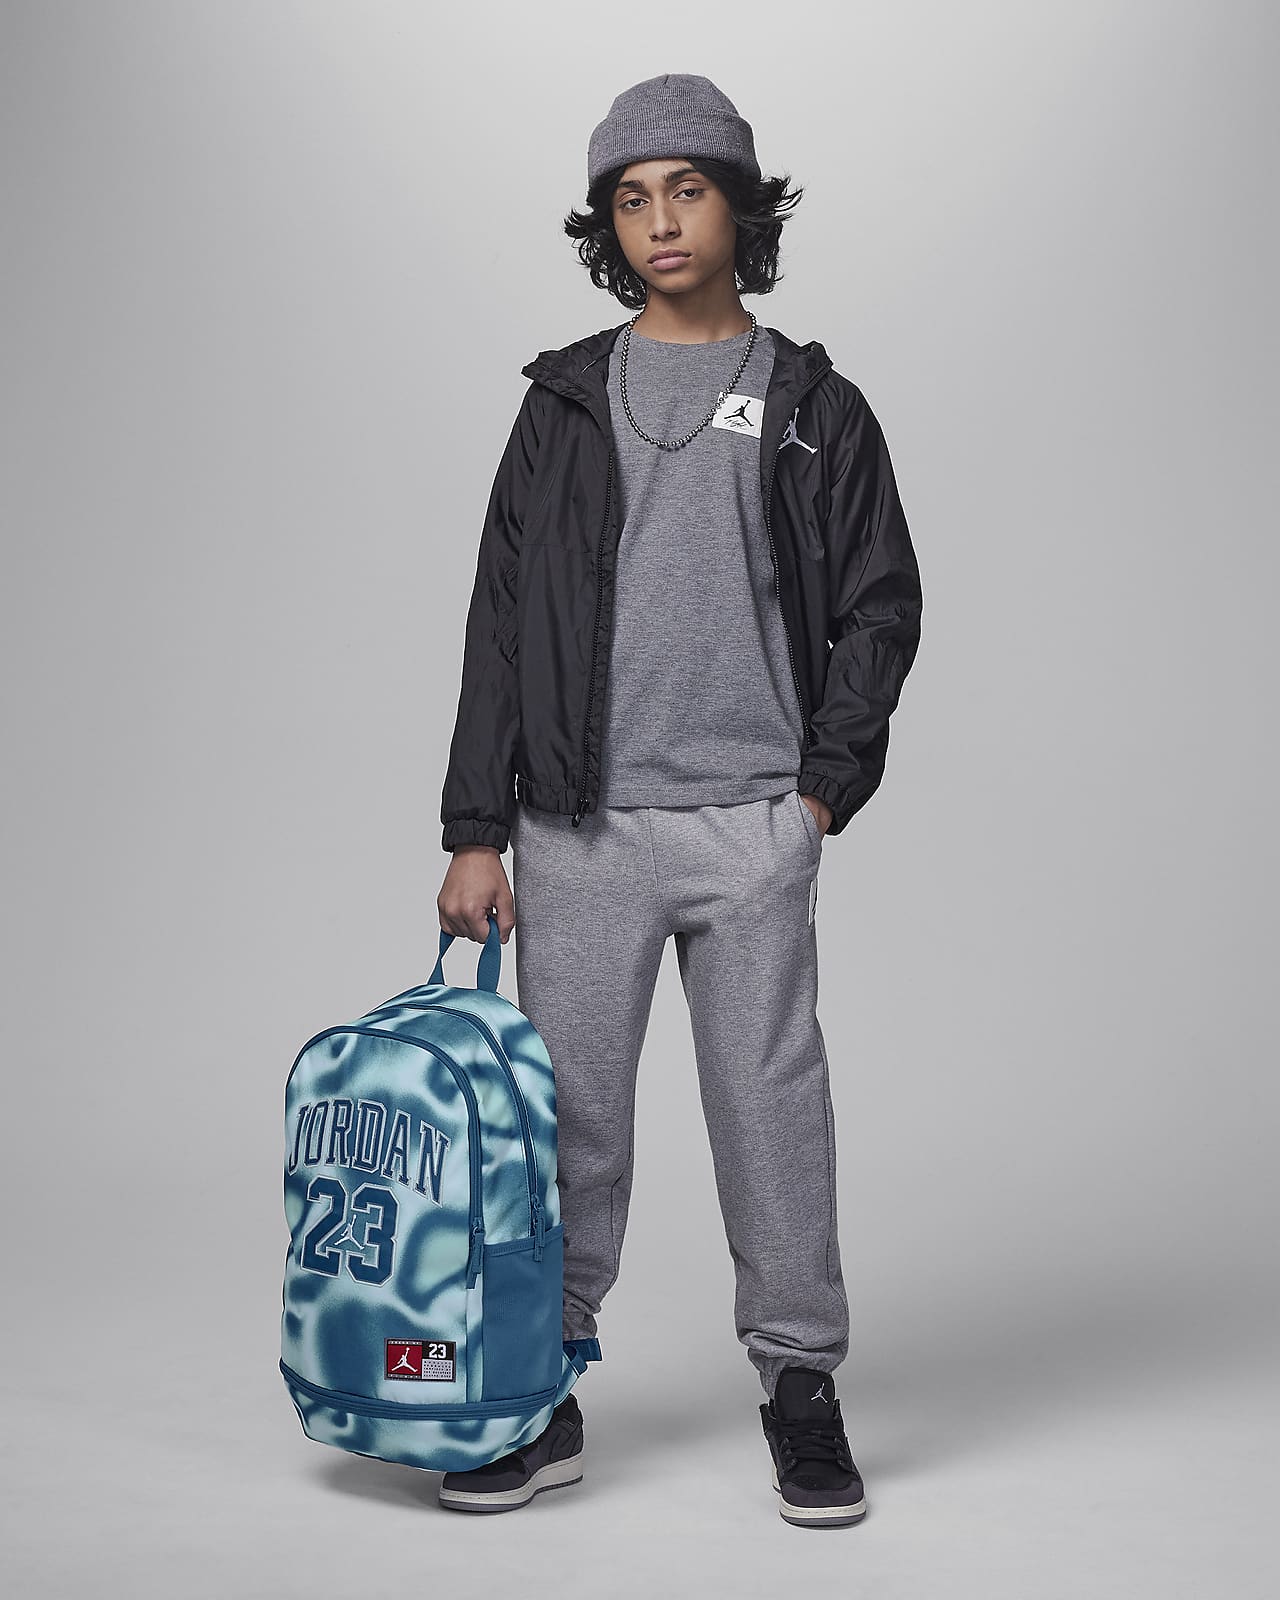 Jordan Jersey Backpack Big Kids' Backpack (27L)